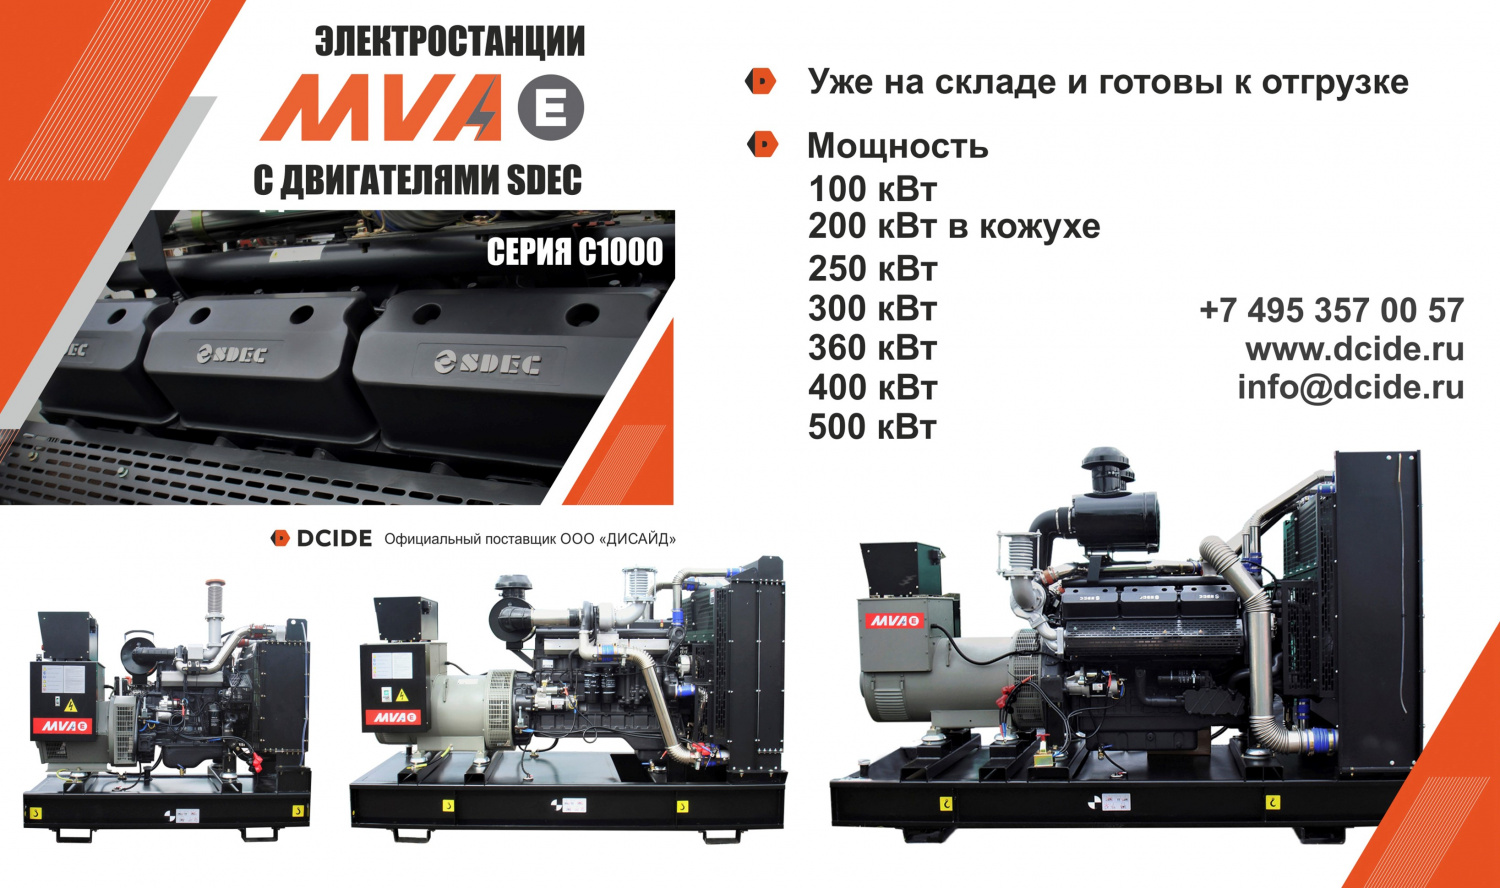 Новая серия генераторов MVAE - C1000